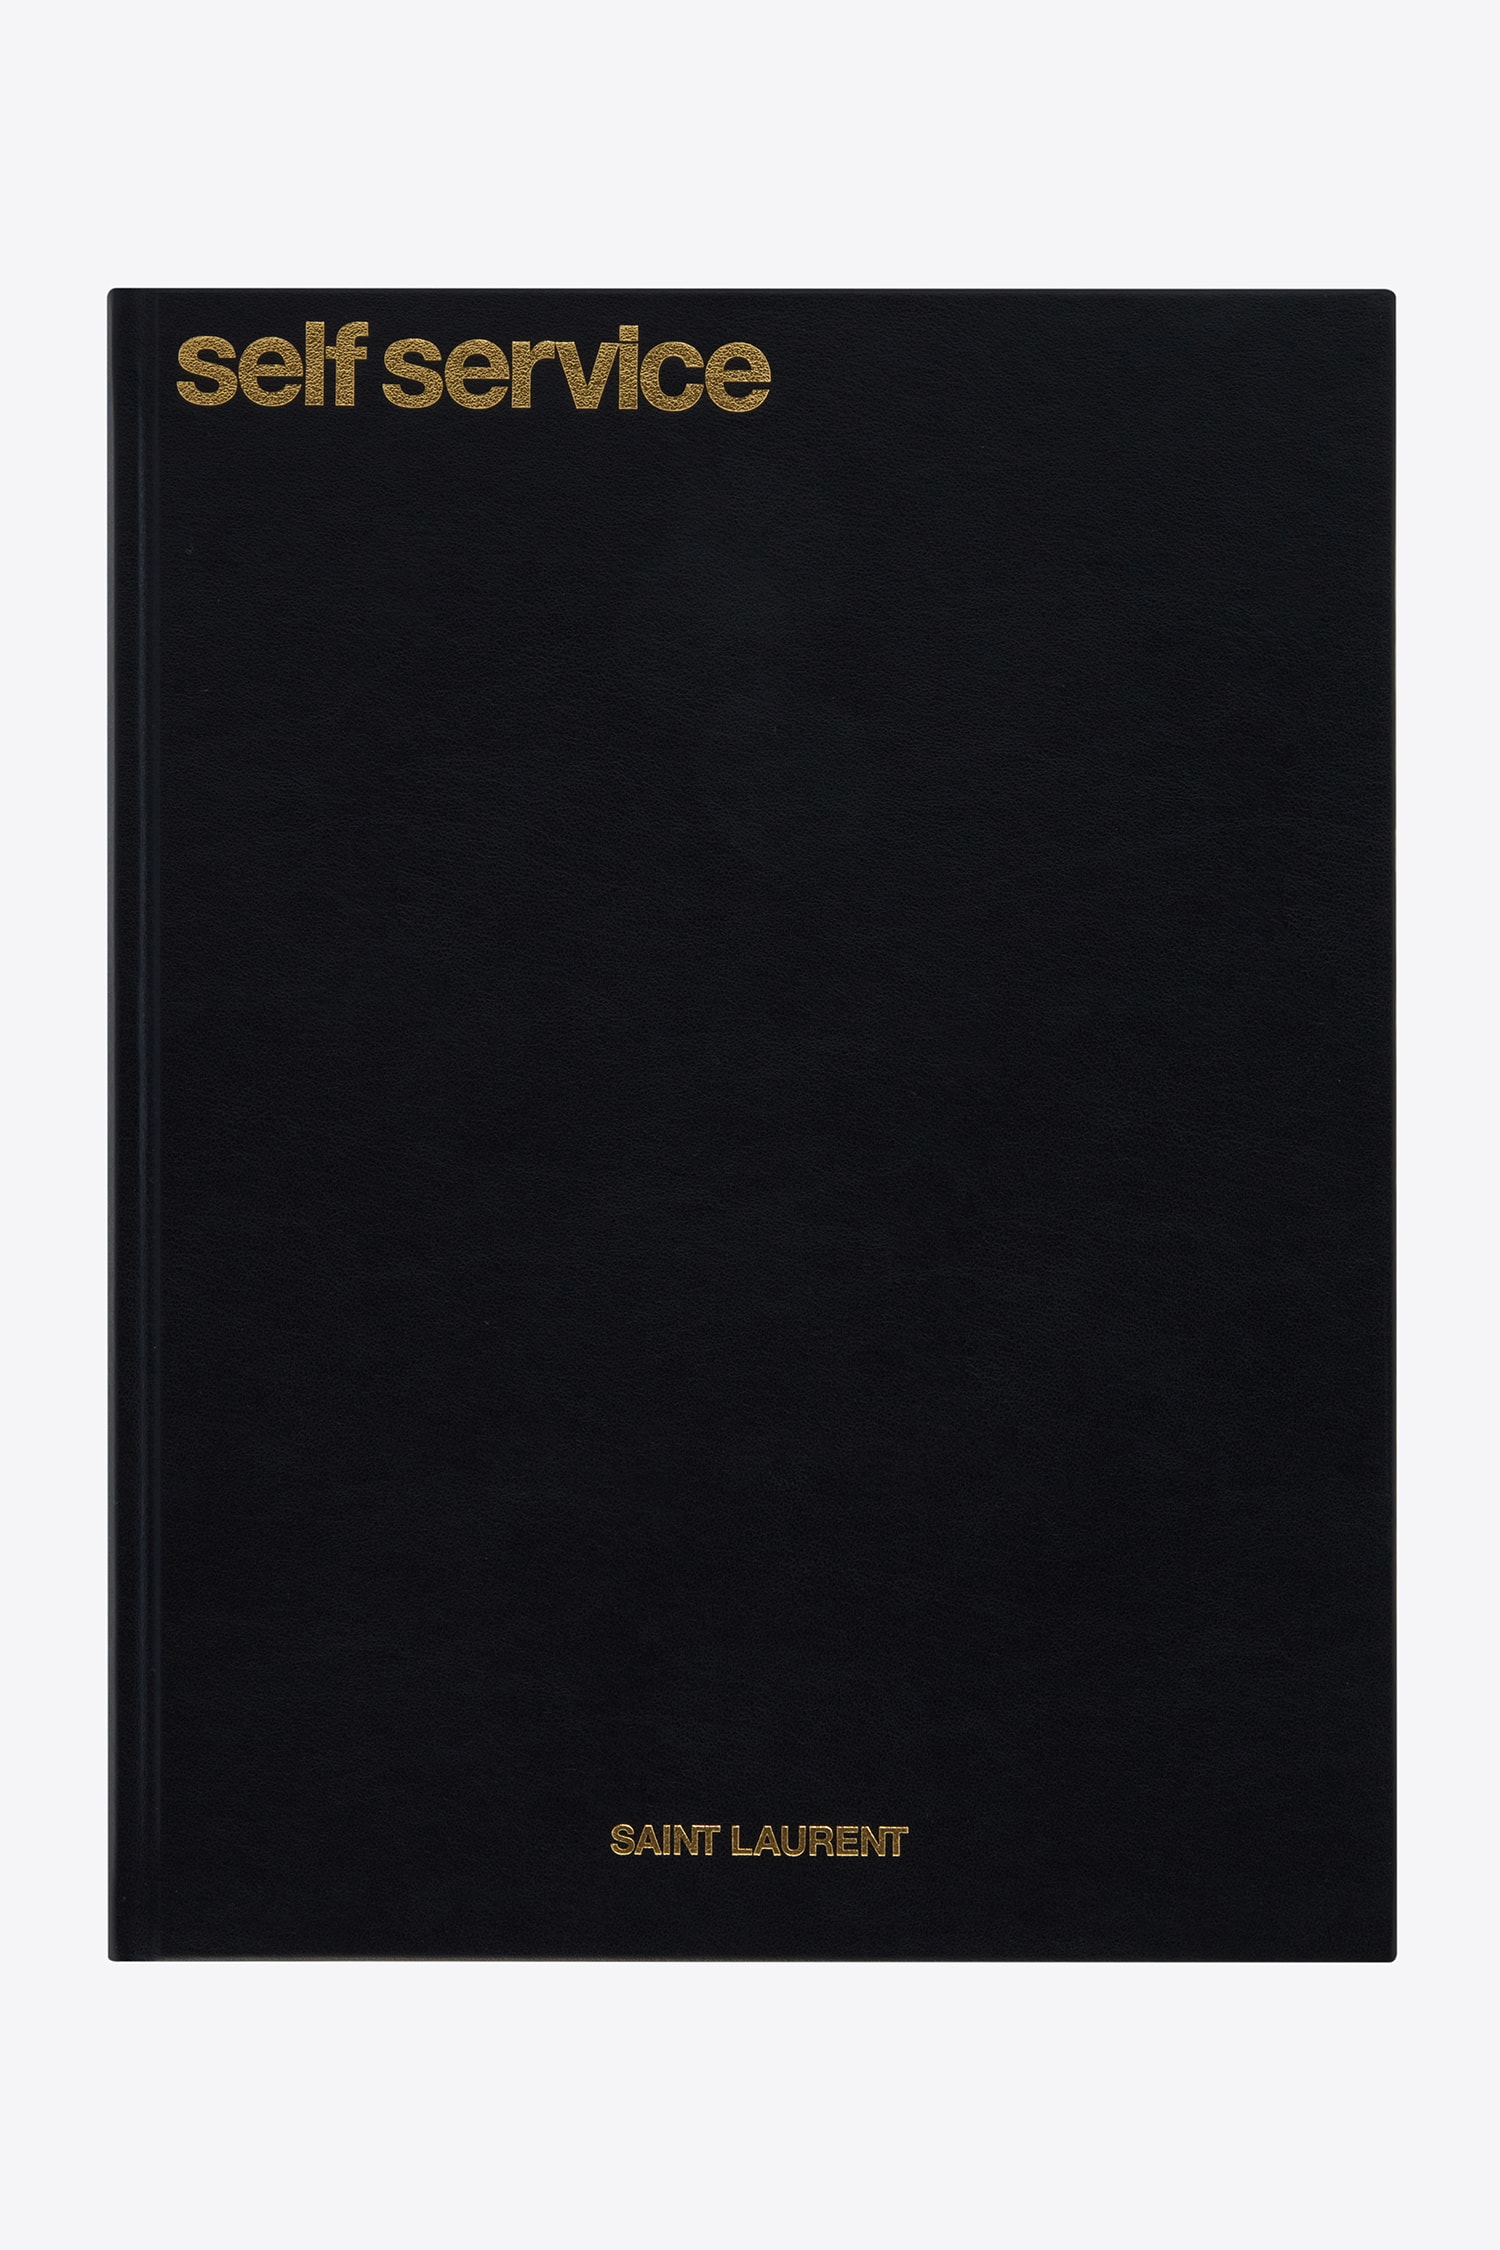 Saint Laurent Rive Droite Self Service